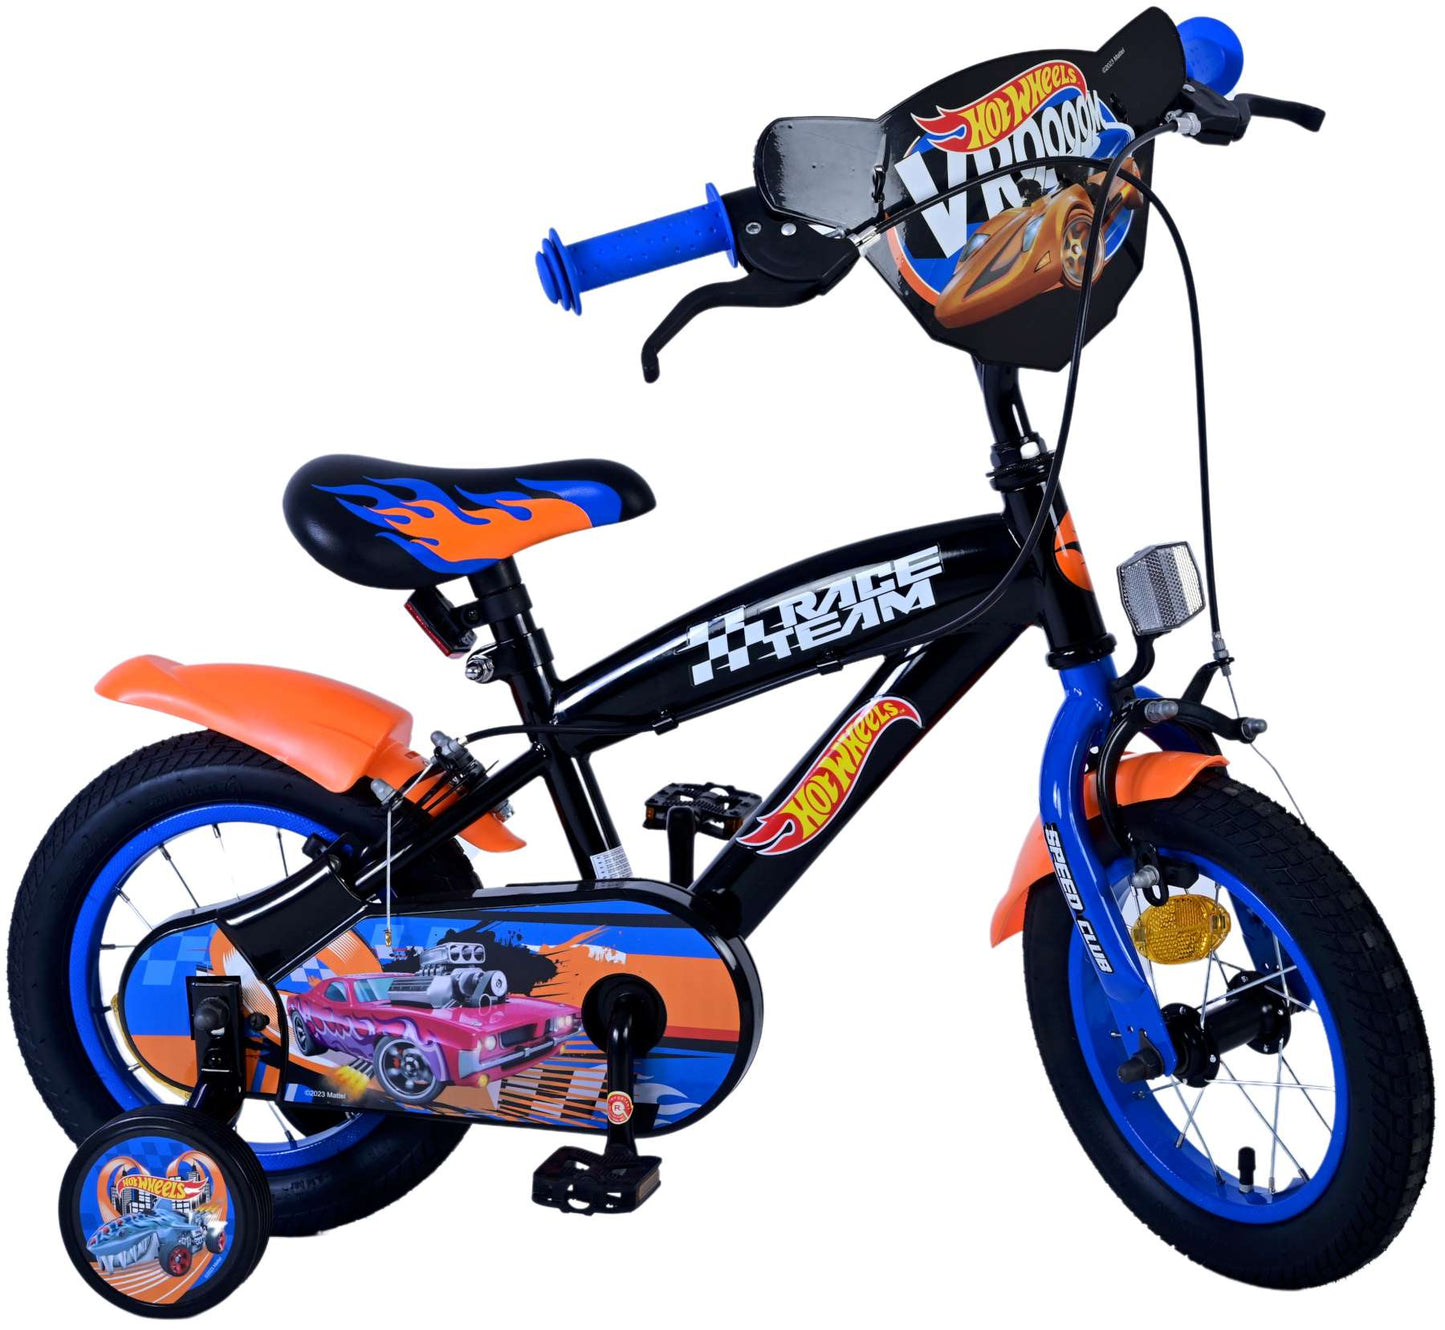 Hot Wheels Kinderfiets Jongens 12 inch Zwart Oranje Blauw Twee handremmen